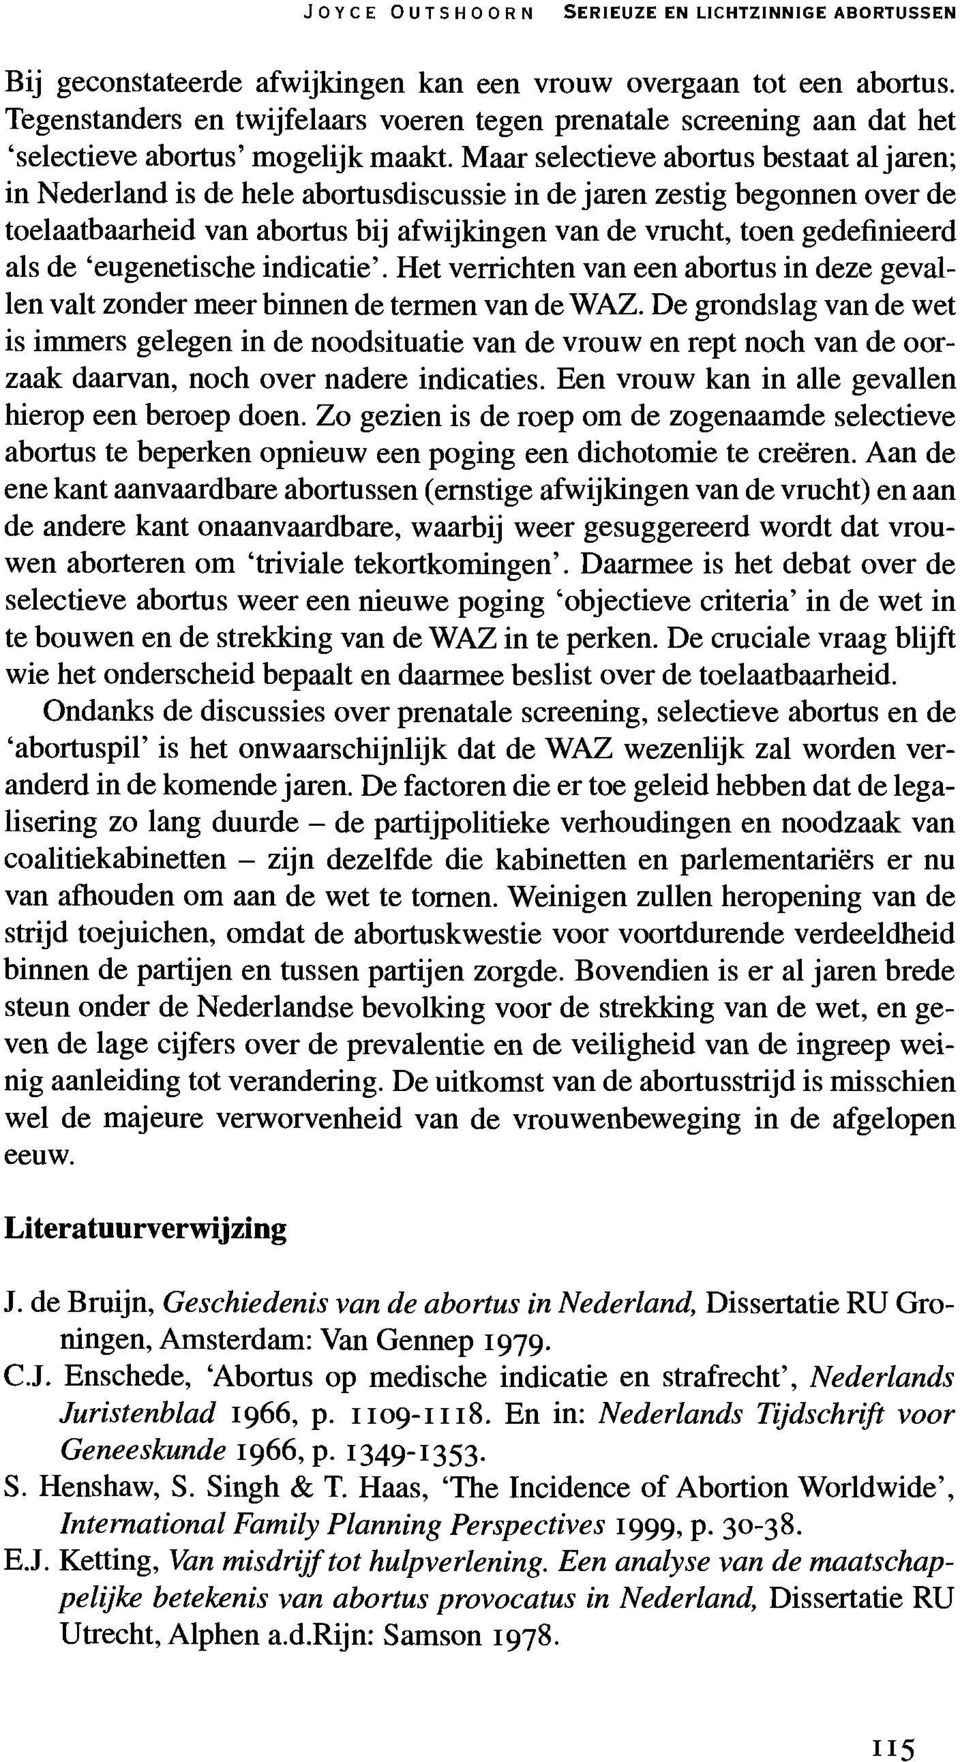 Maar selectieve abortus bestaat al jaren; in Nederland is de hele abortusdiscussie in de jaren zestig begonnen over de toelaatbaarheid van abortus bij afwijkingen van de vrucht, toen gedefinieerd als